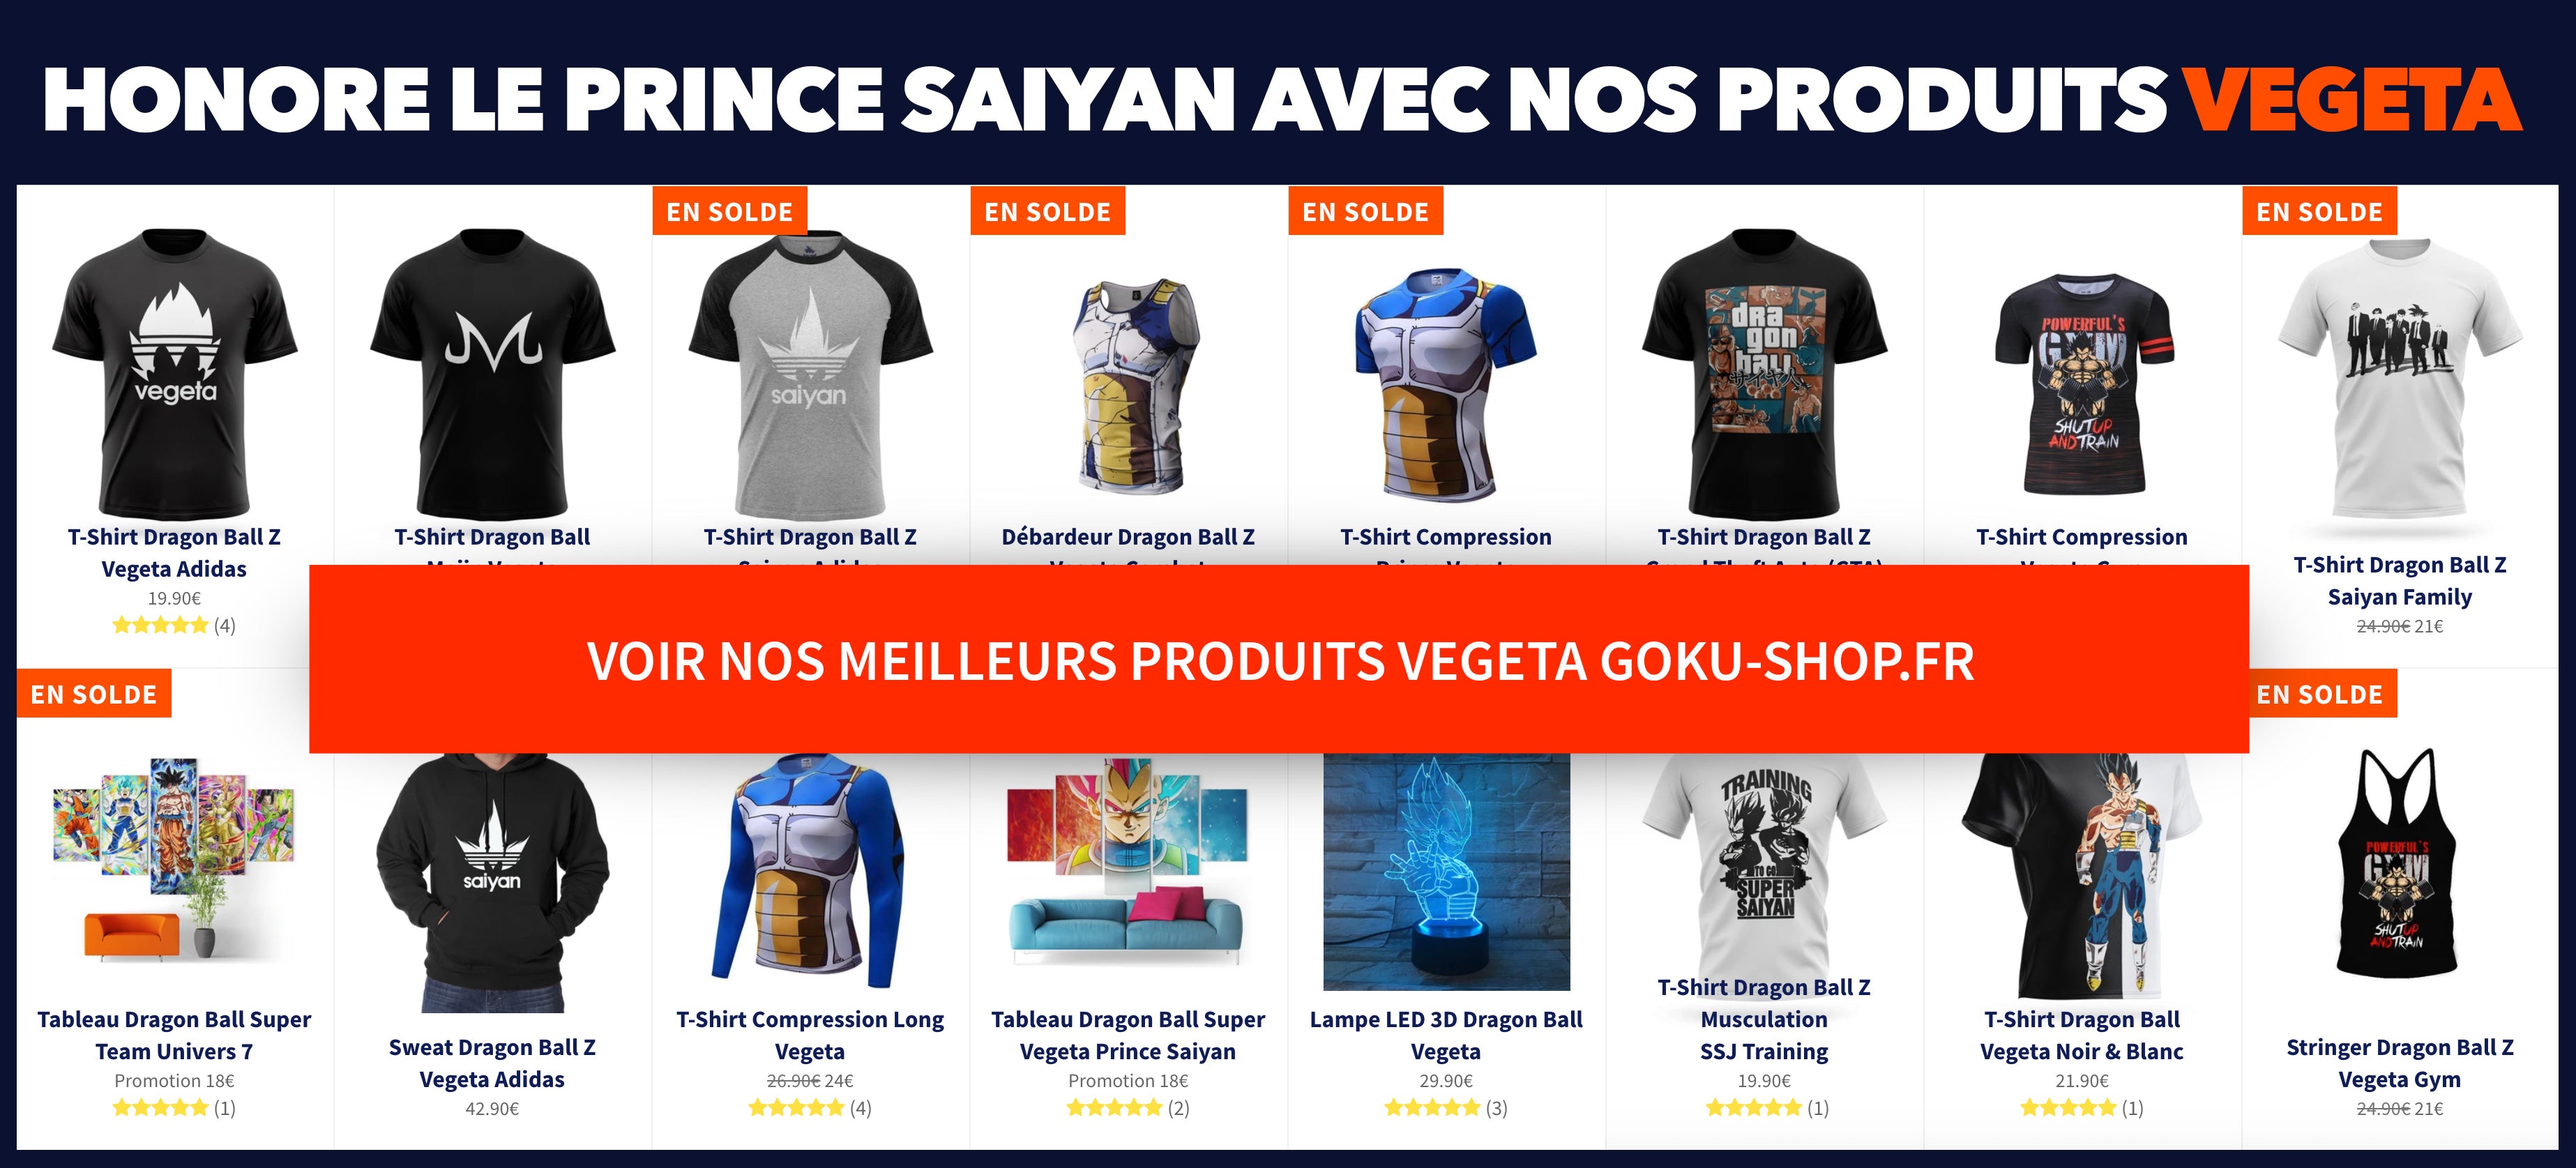 Saiyan Prince Products